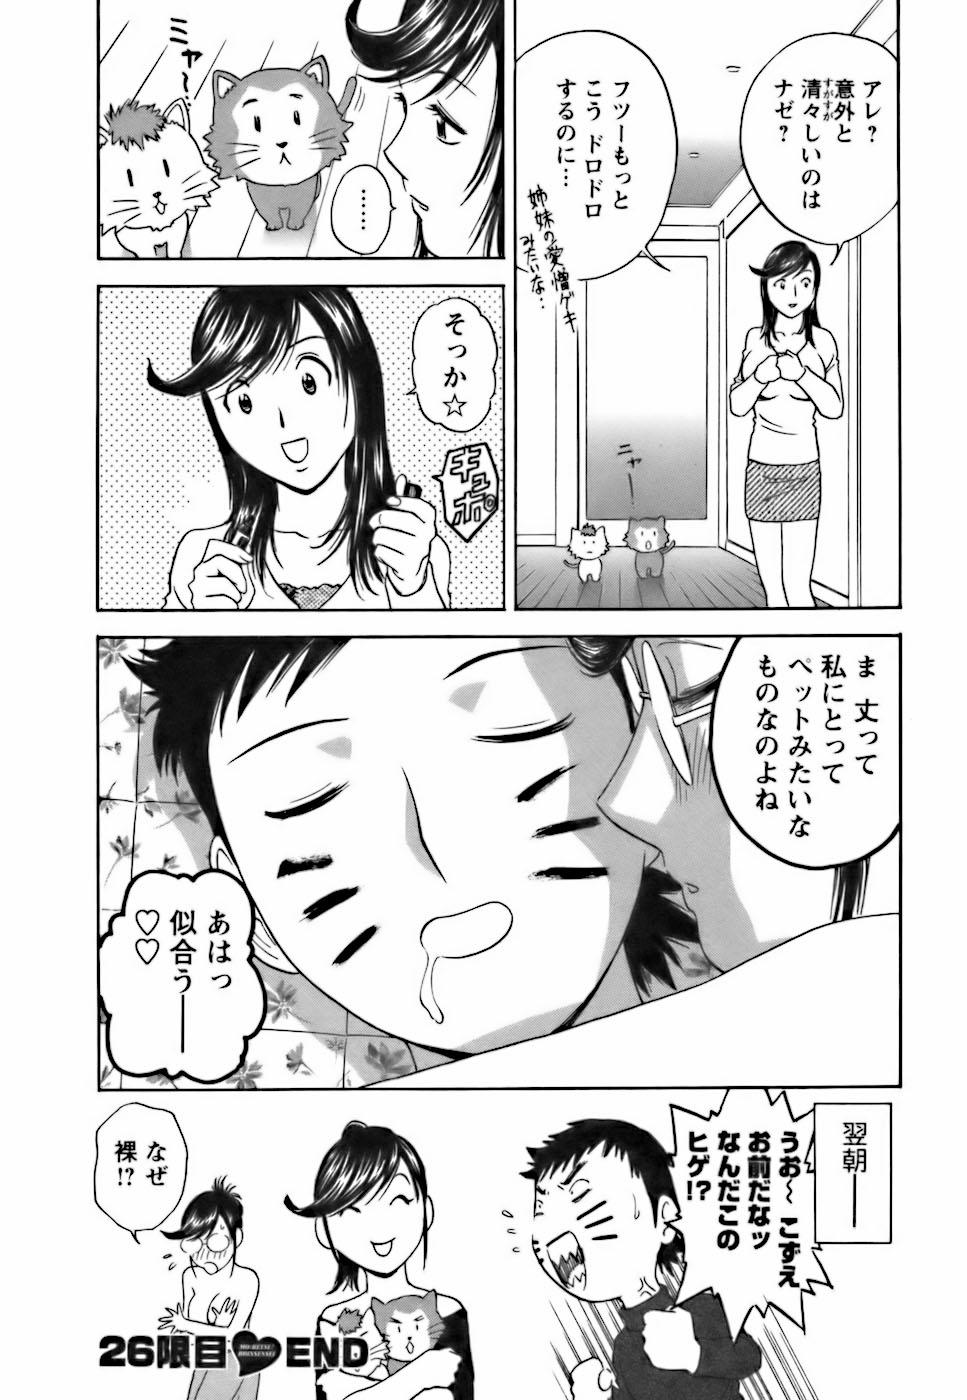 [Hidemaru] Mo-Retsu! Boin Sensei (Boing Boing Teacher) Vol.3 167